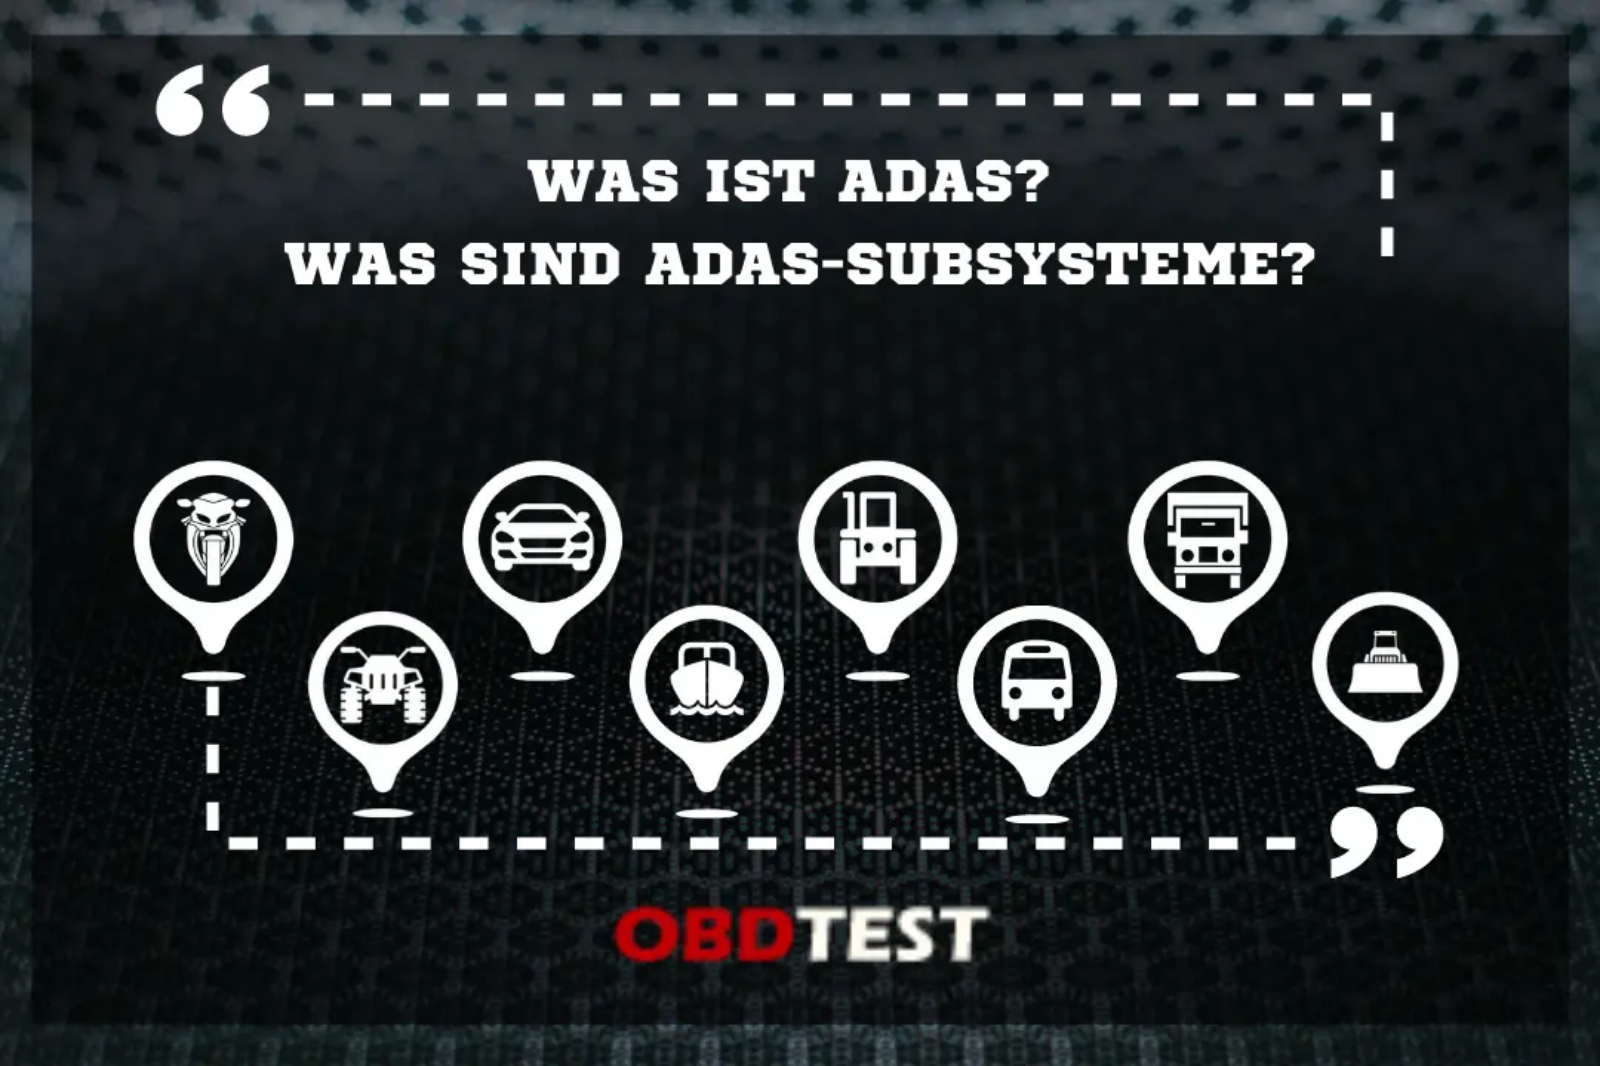 Was ist ADAS? Was sind ADAS-Subsysteme?